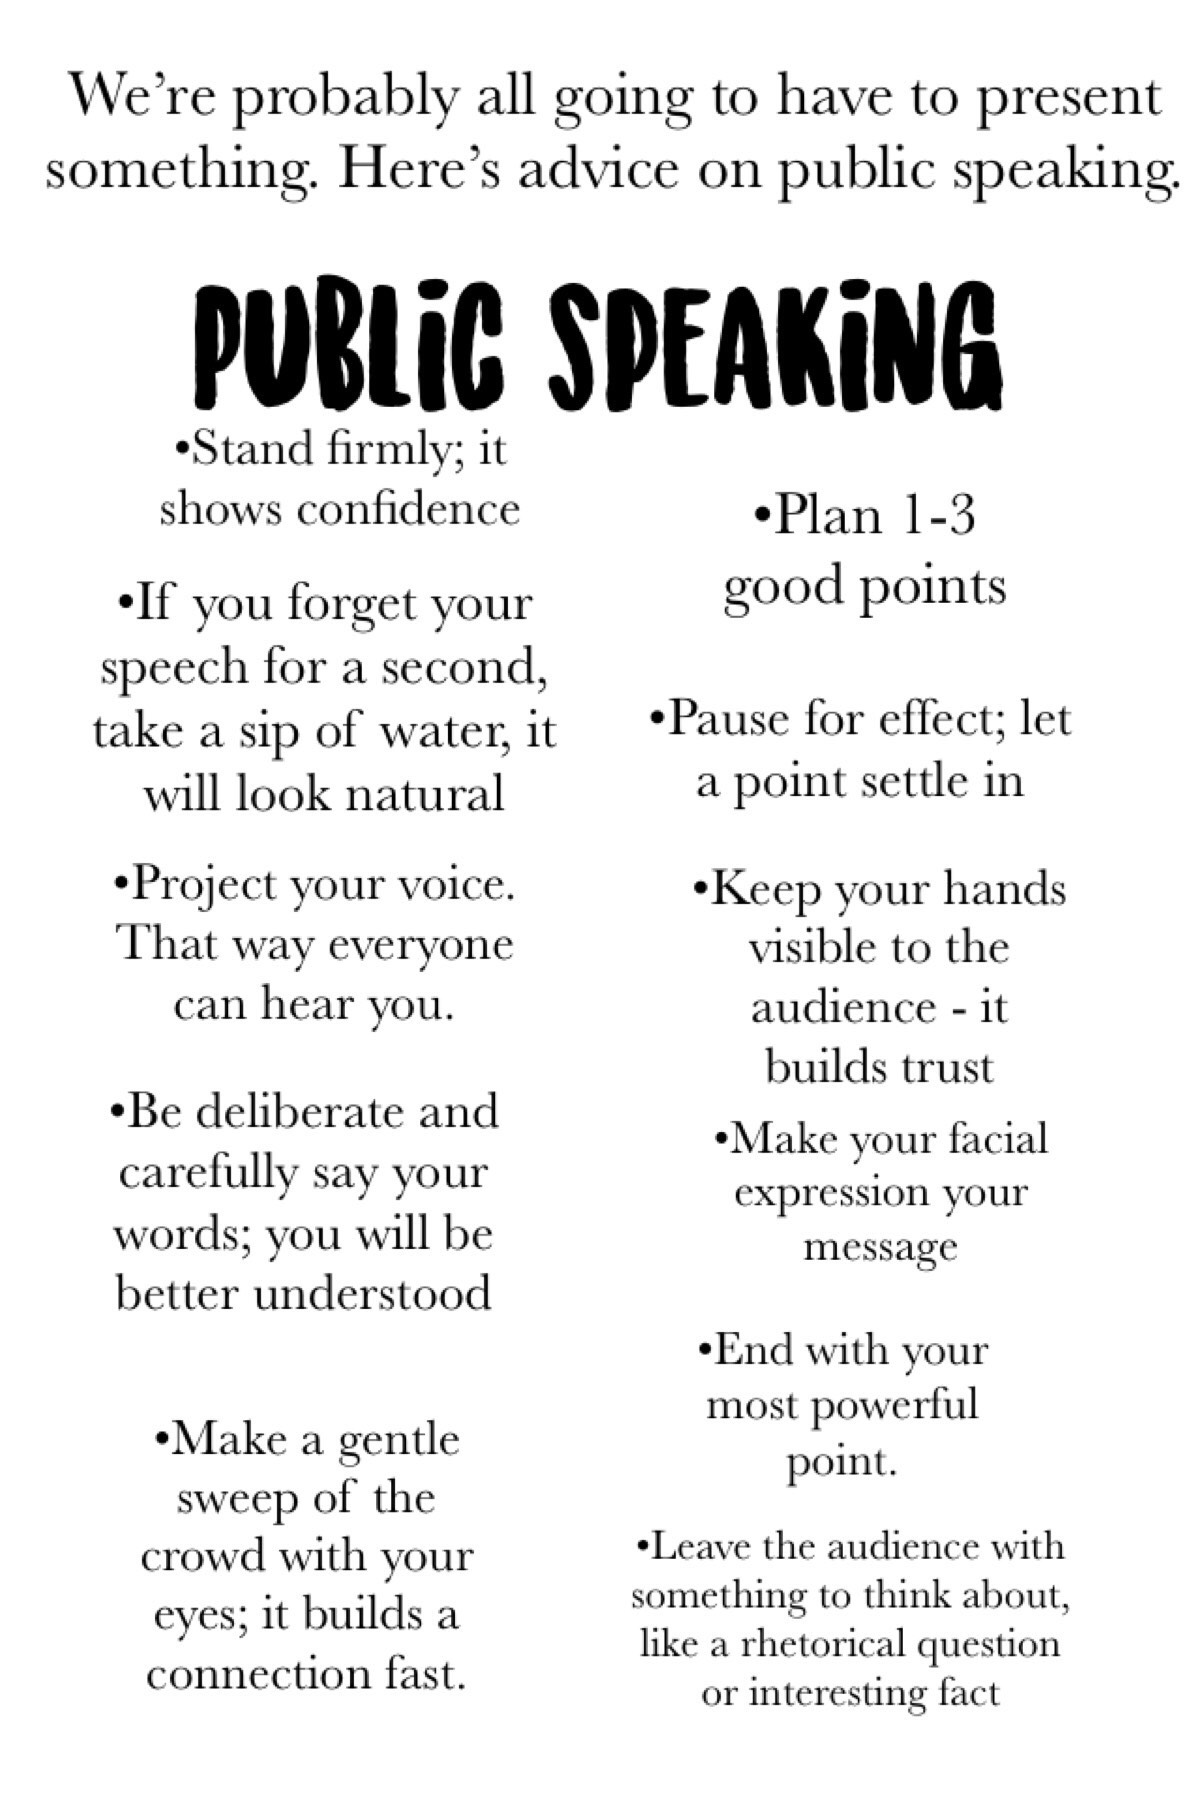 Public speaking 